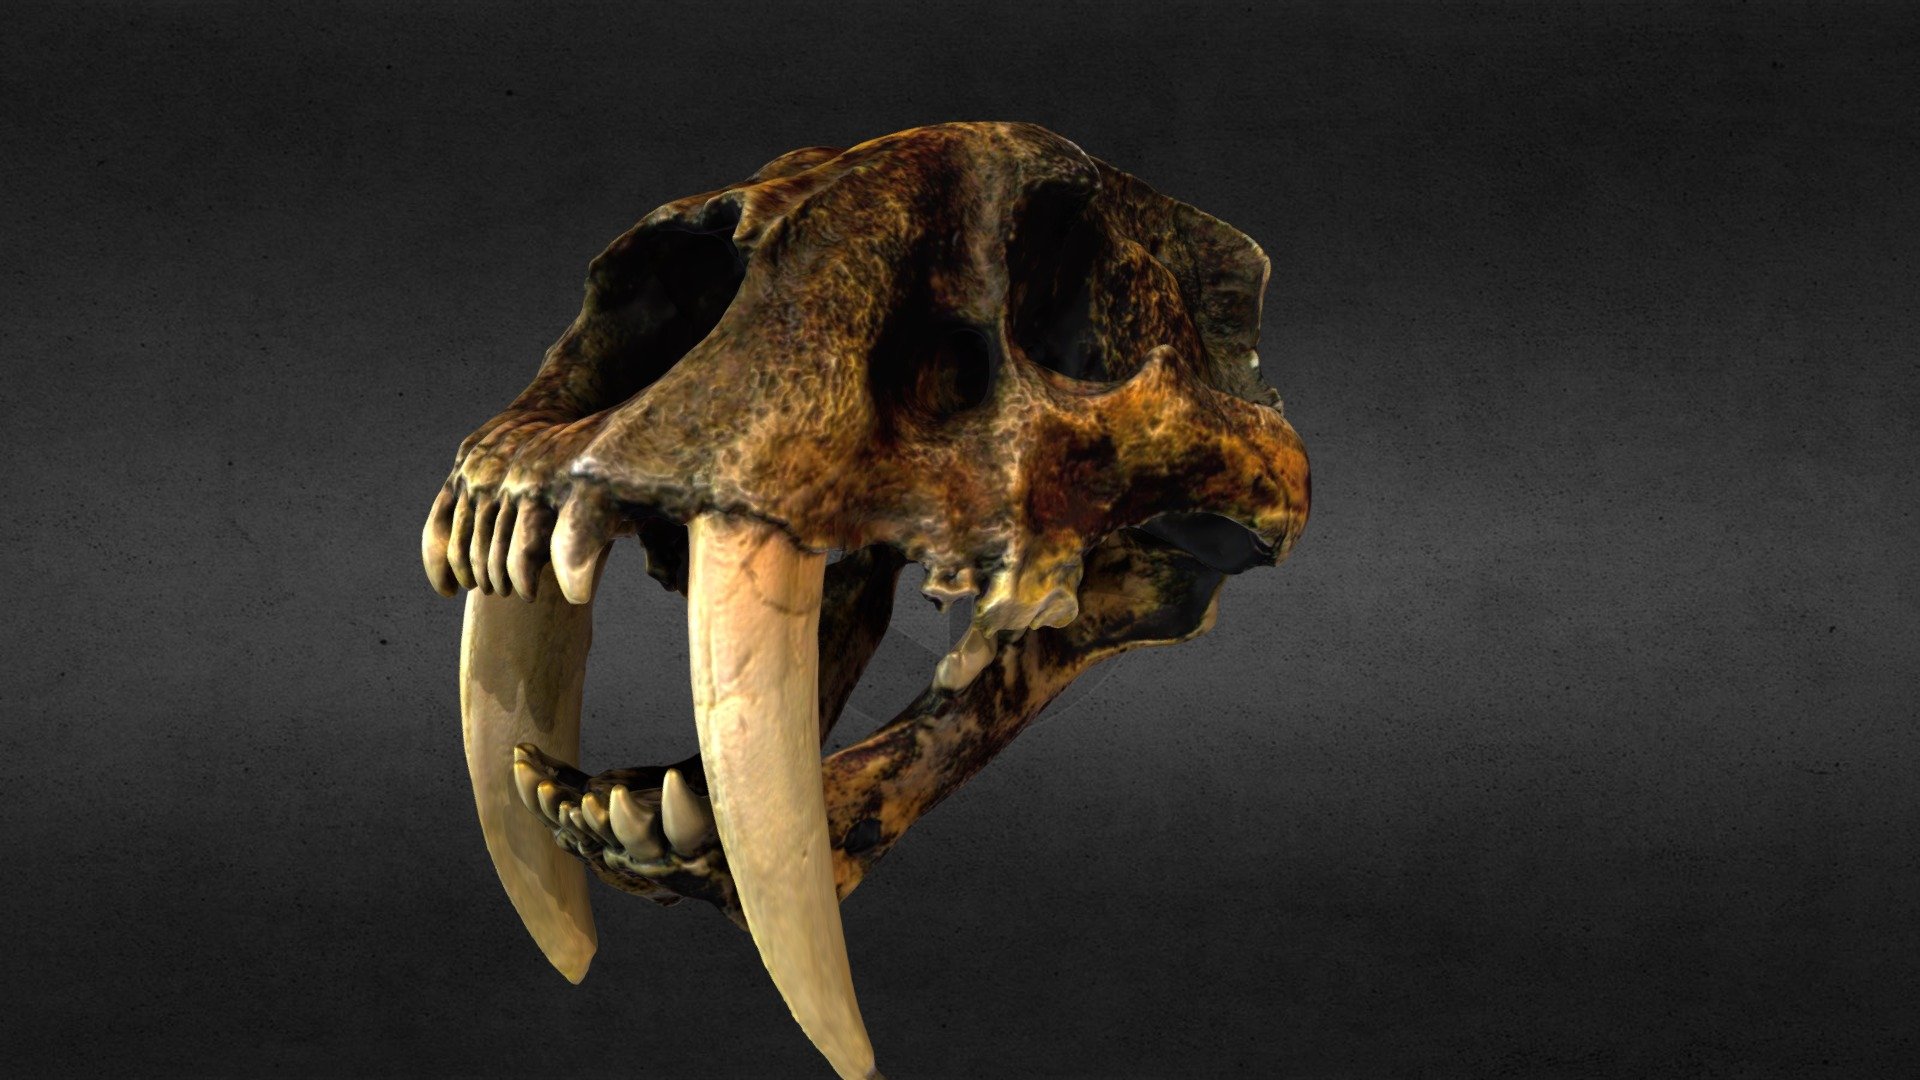 Saber-Toothed Tiger Skull